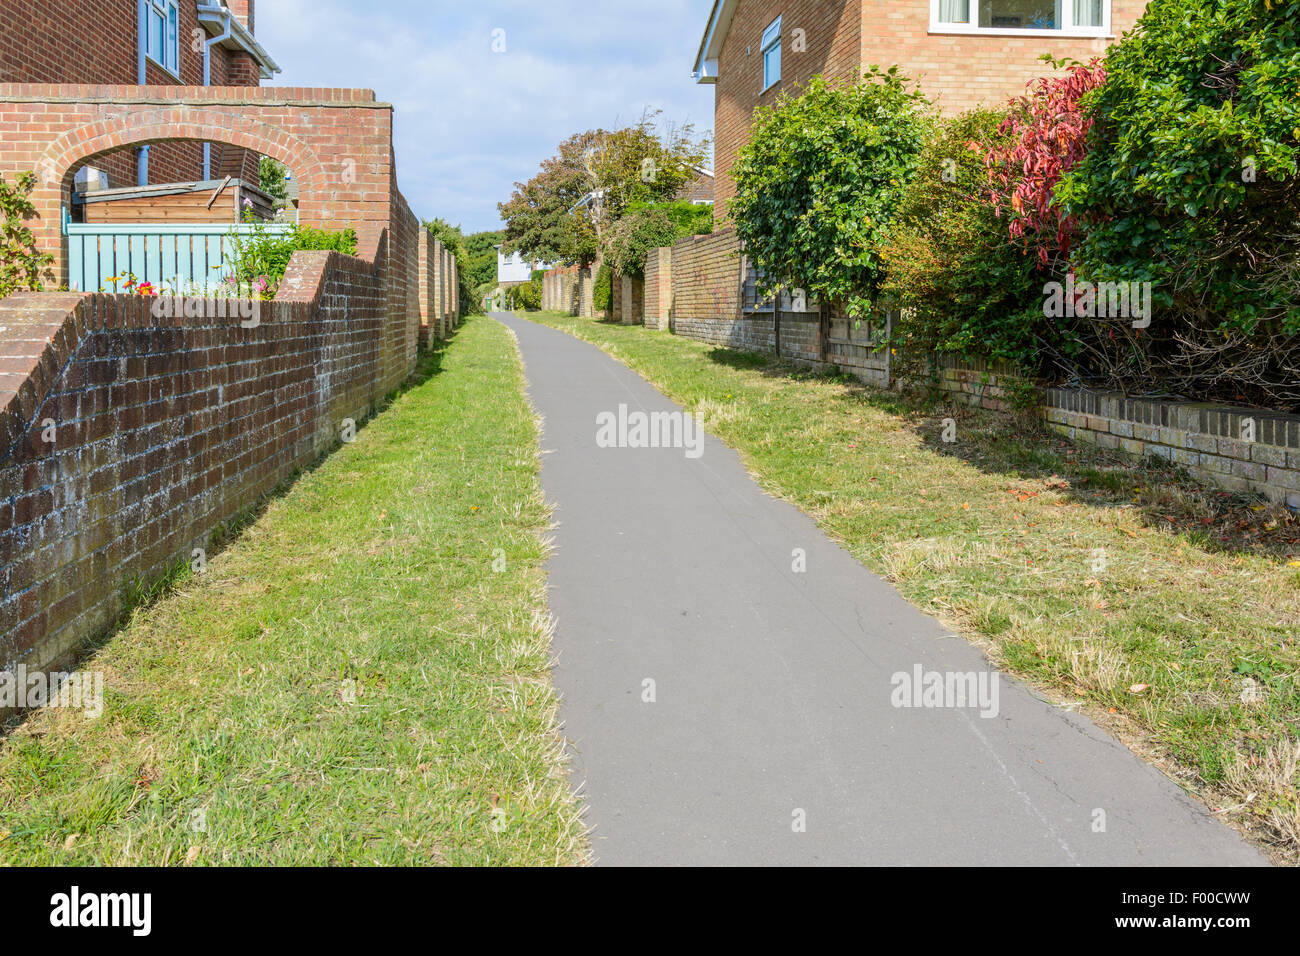 Schmale Gasse oder Twitten Passage Weg zwischen den Häusern in einem Wohngebiet in Großbritannien. Stockfoto